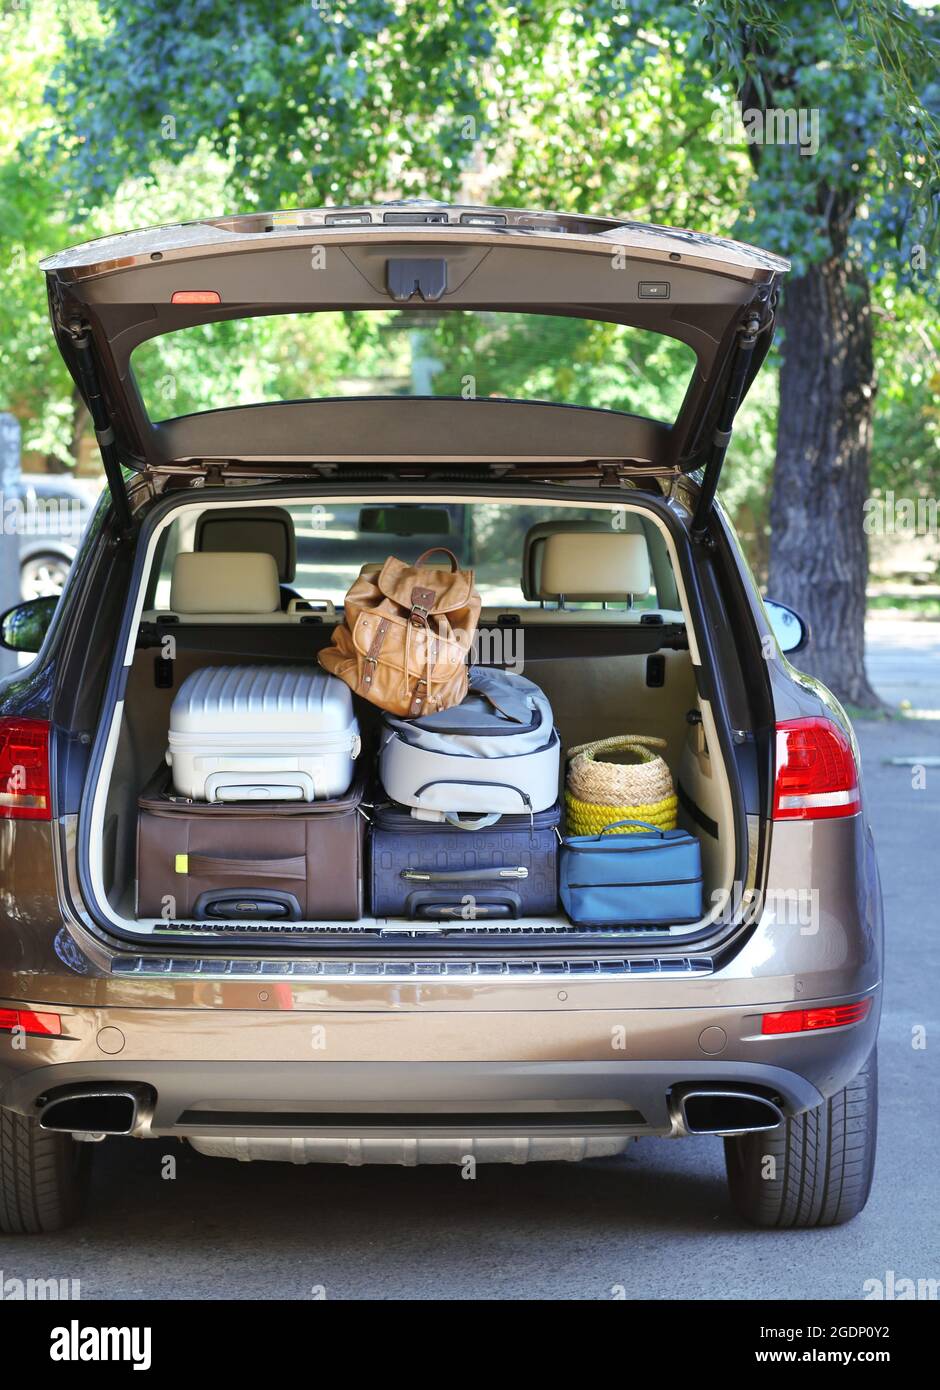 Koffer und Taschen im Kofferraum des Autos für den Urlaub abfahrbereit  Stockfotografie - Alamy